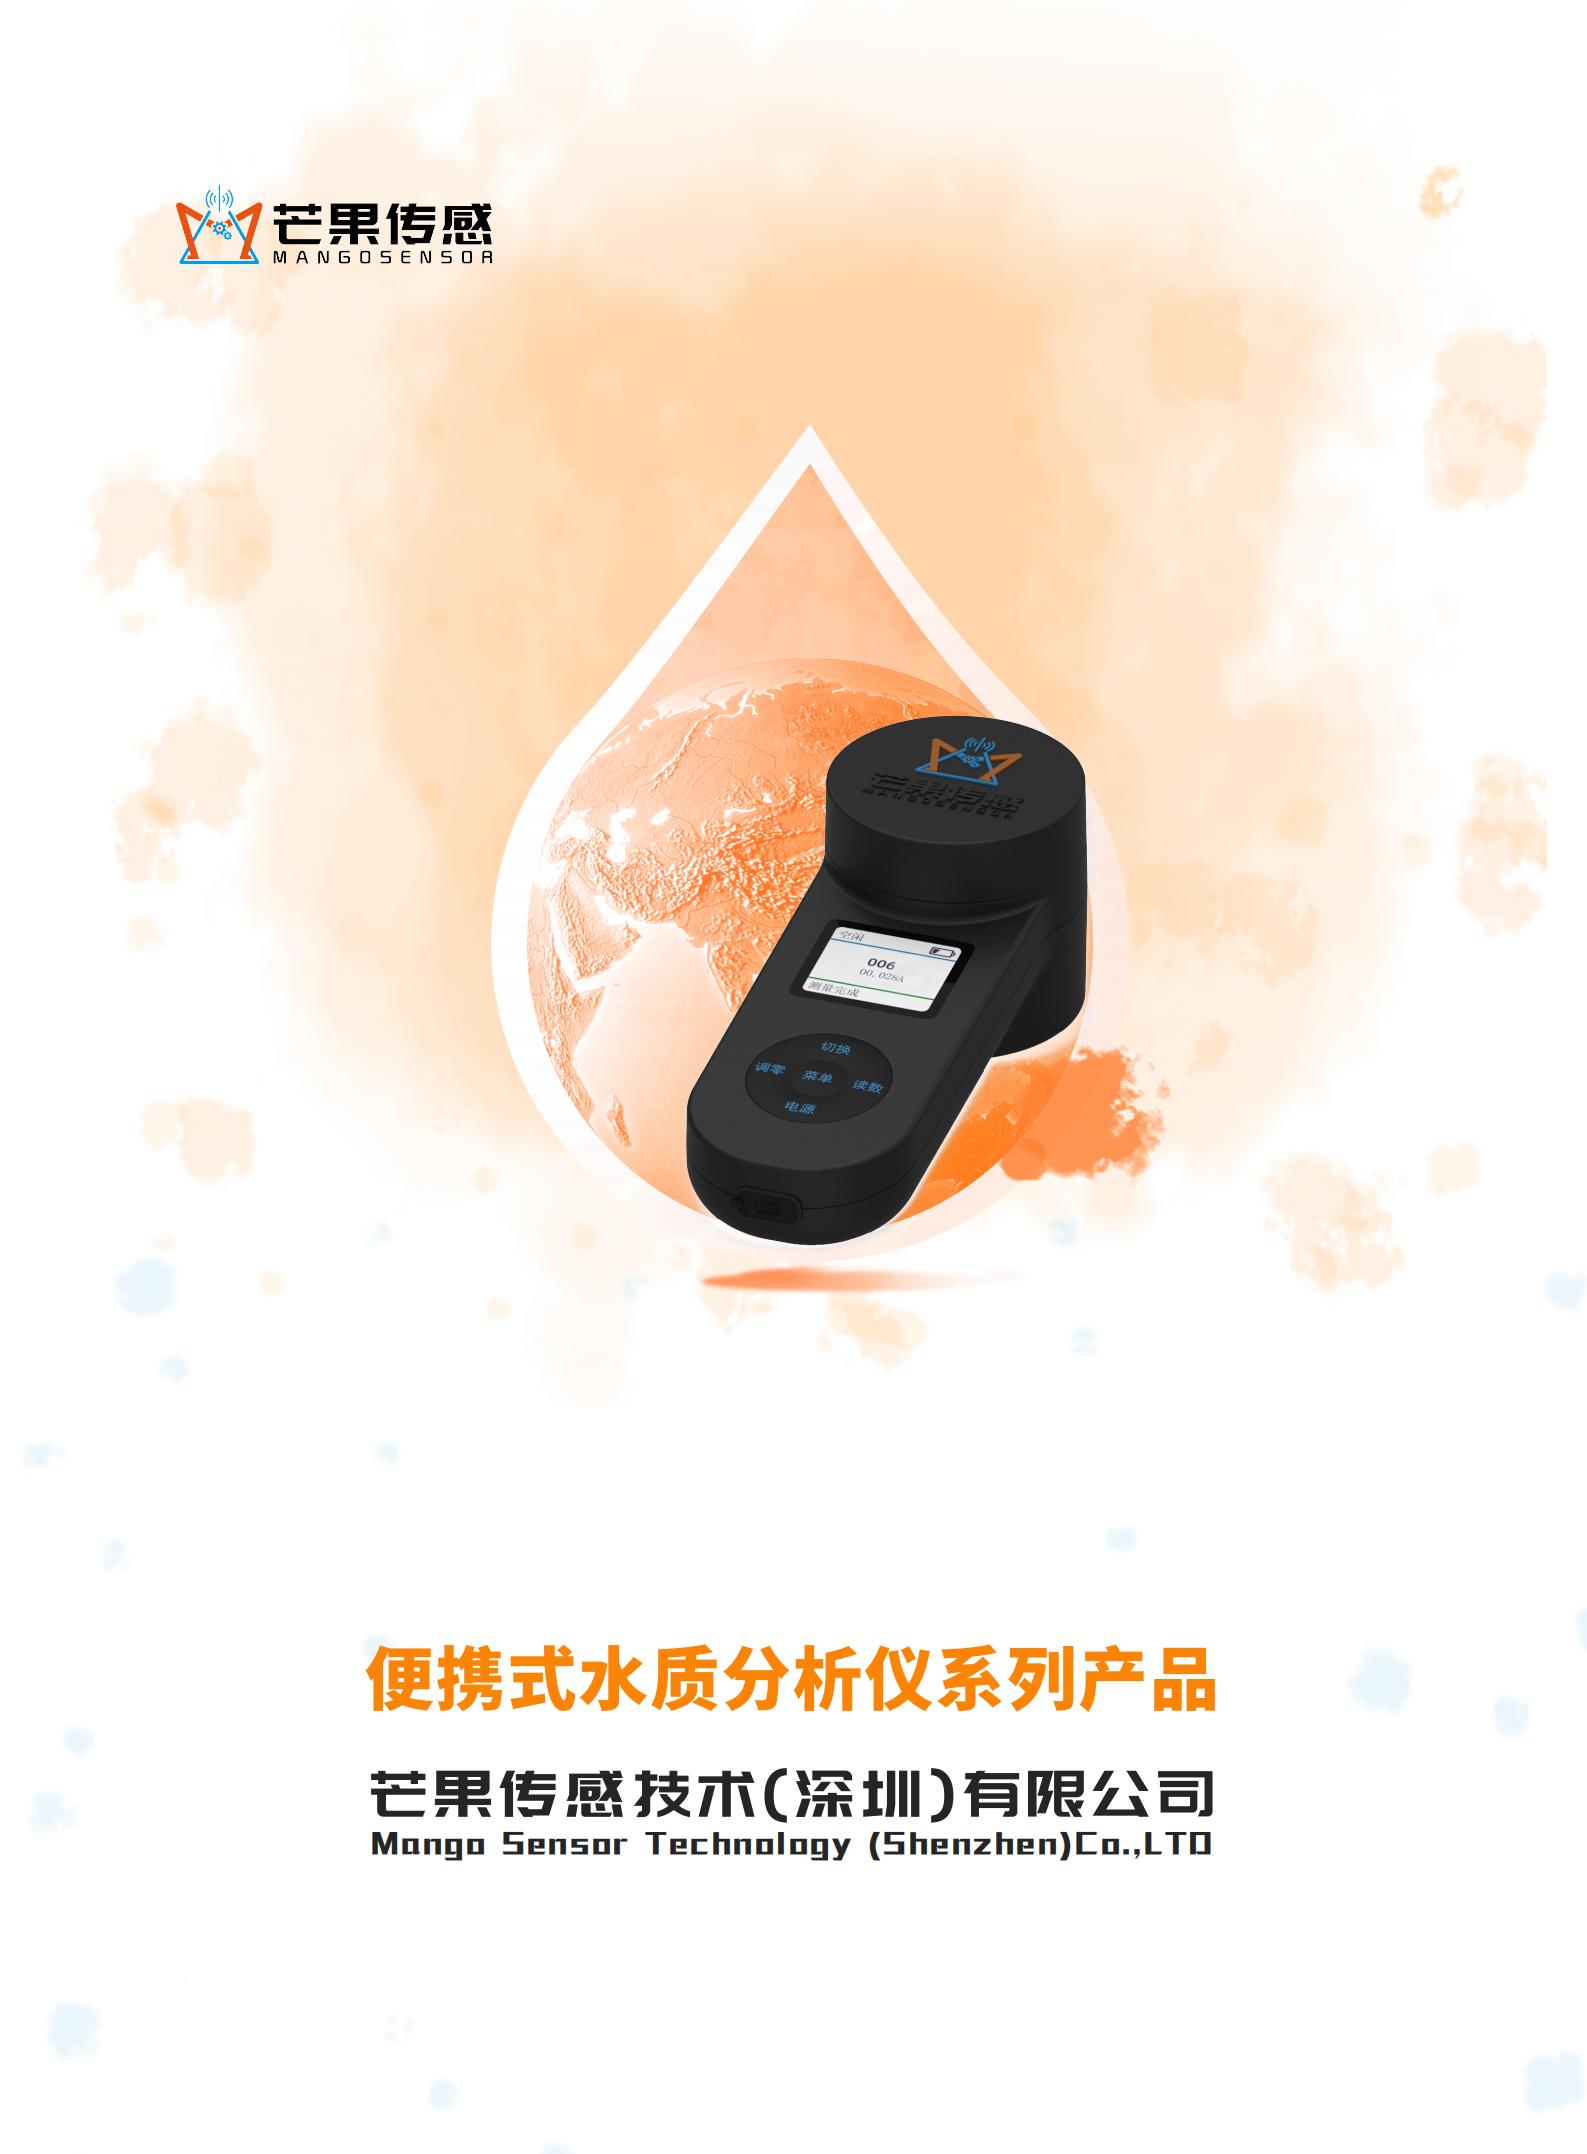 便携式水质分析仪系列产品宣传手册-V3.0